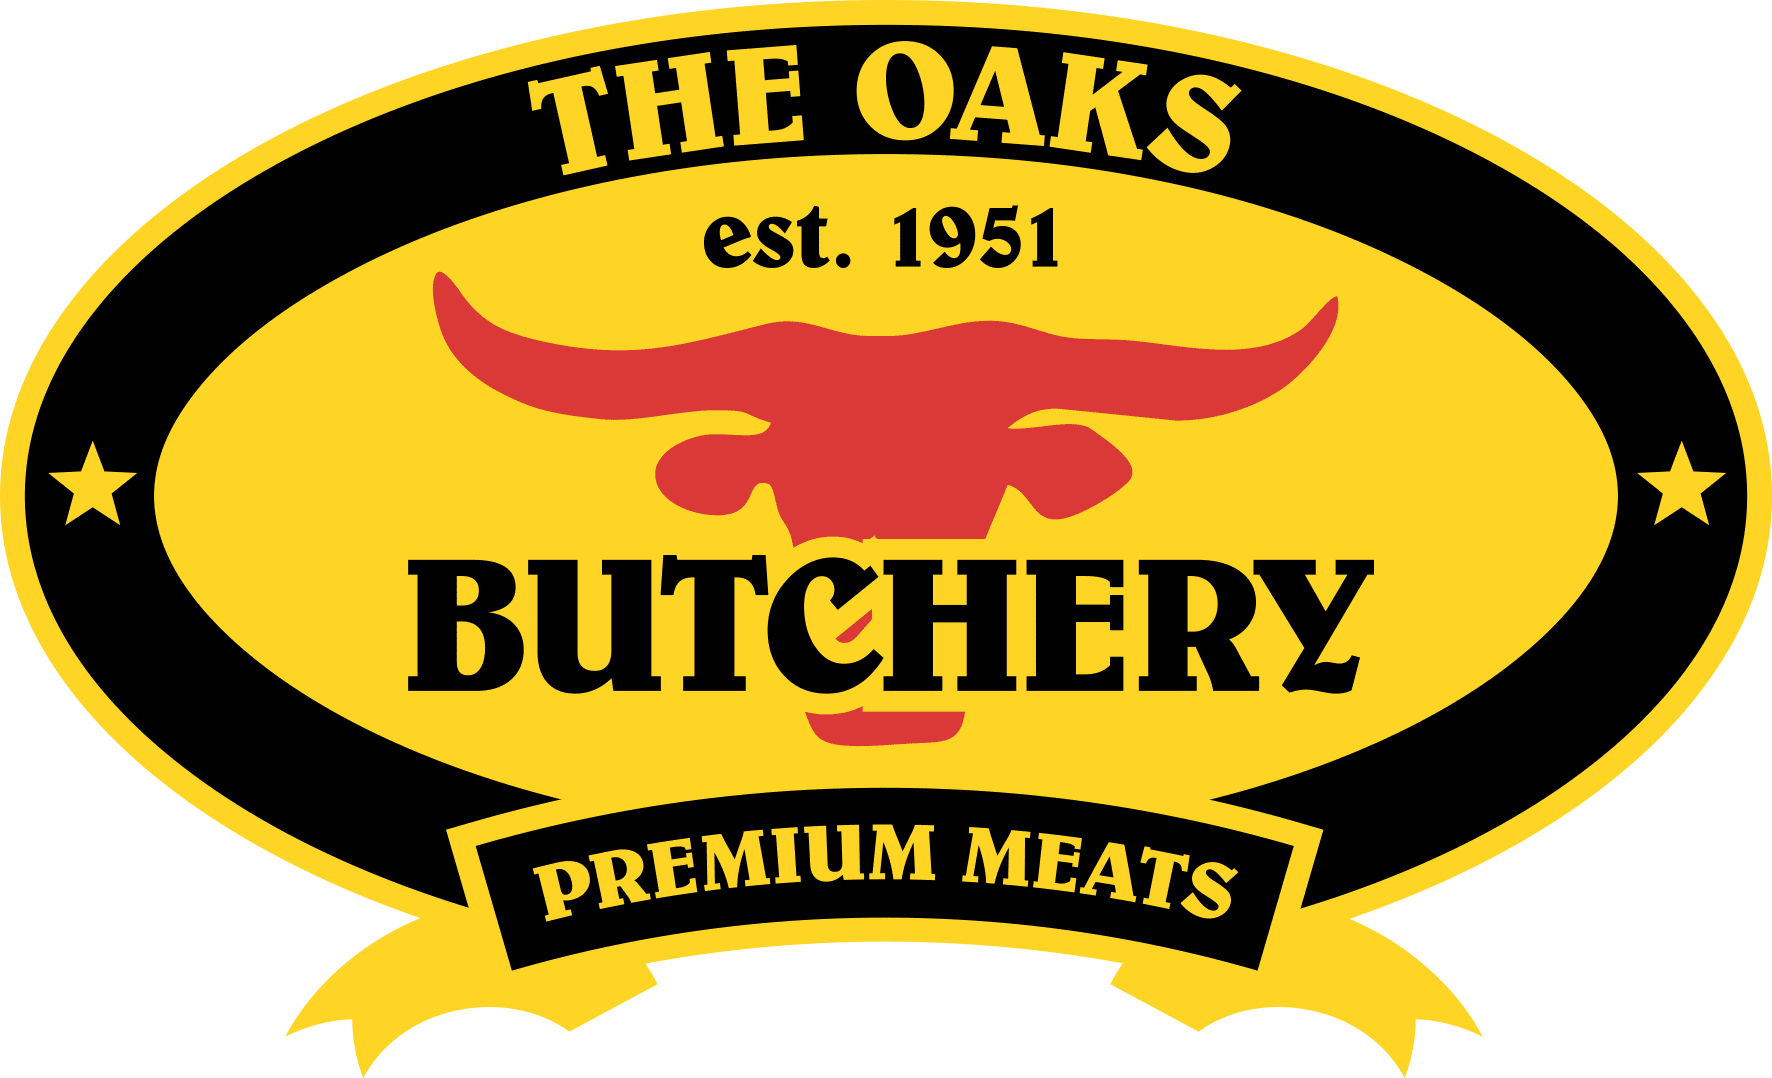 The Oaks Butchery